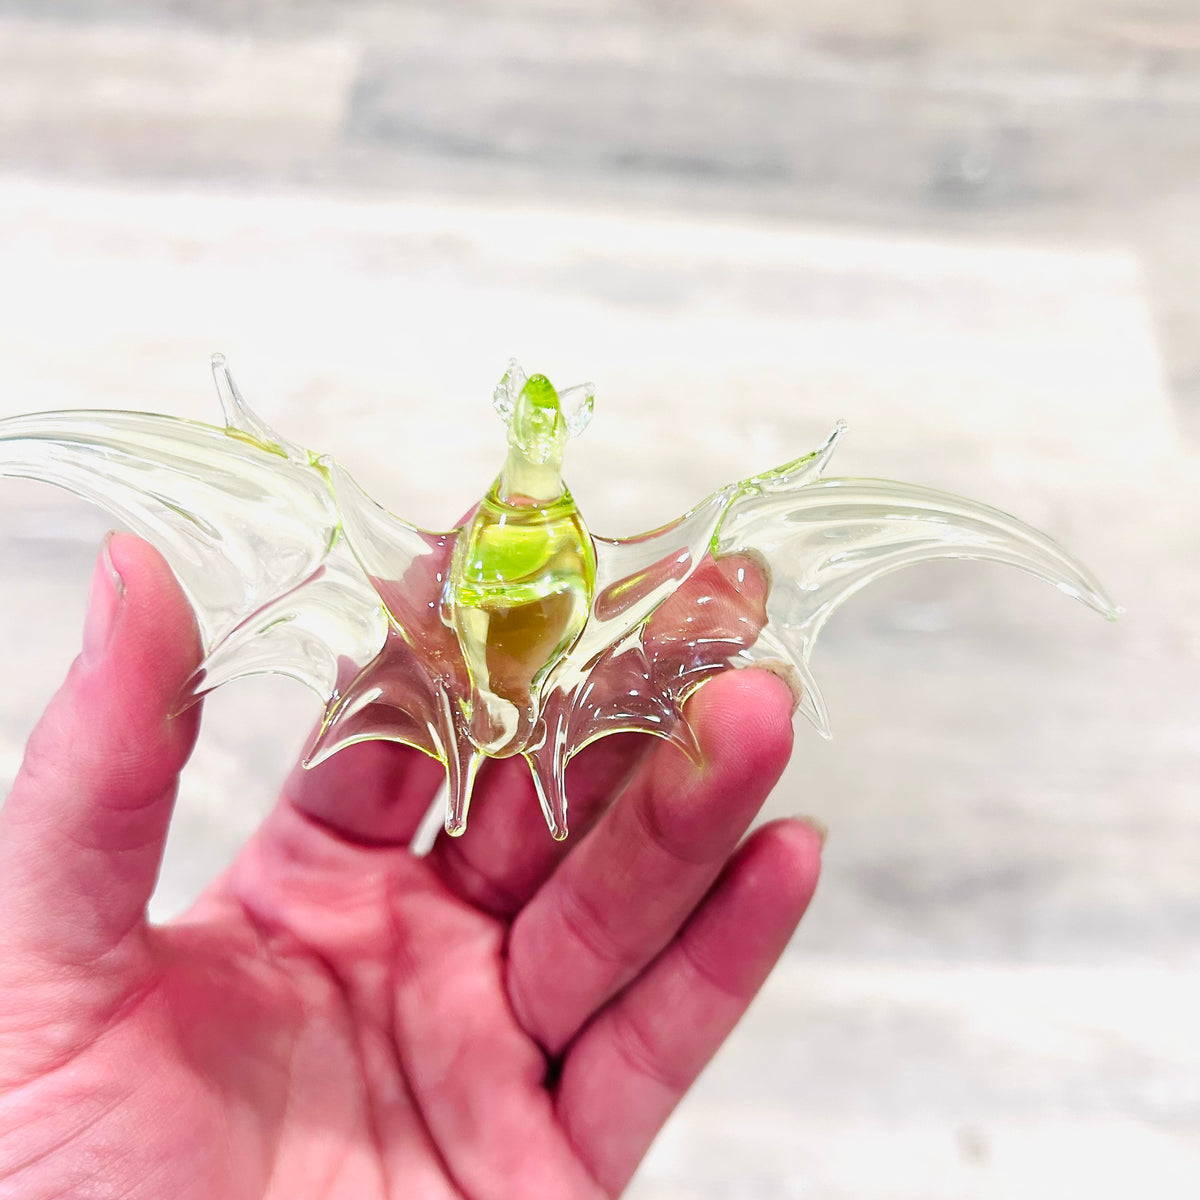 Glass Flying Bat Ornament, 5 Toxic